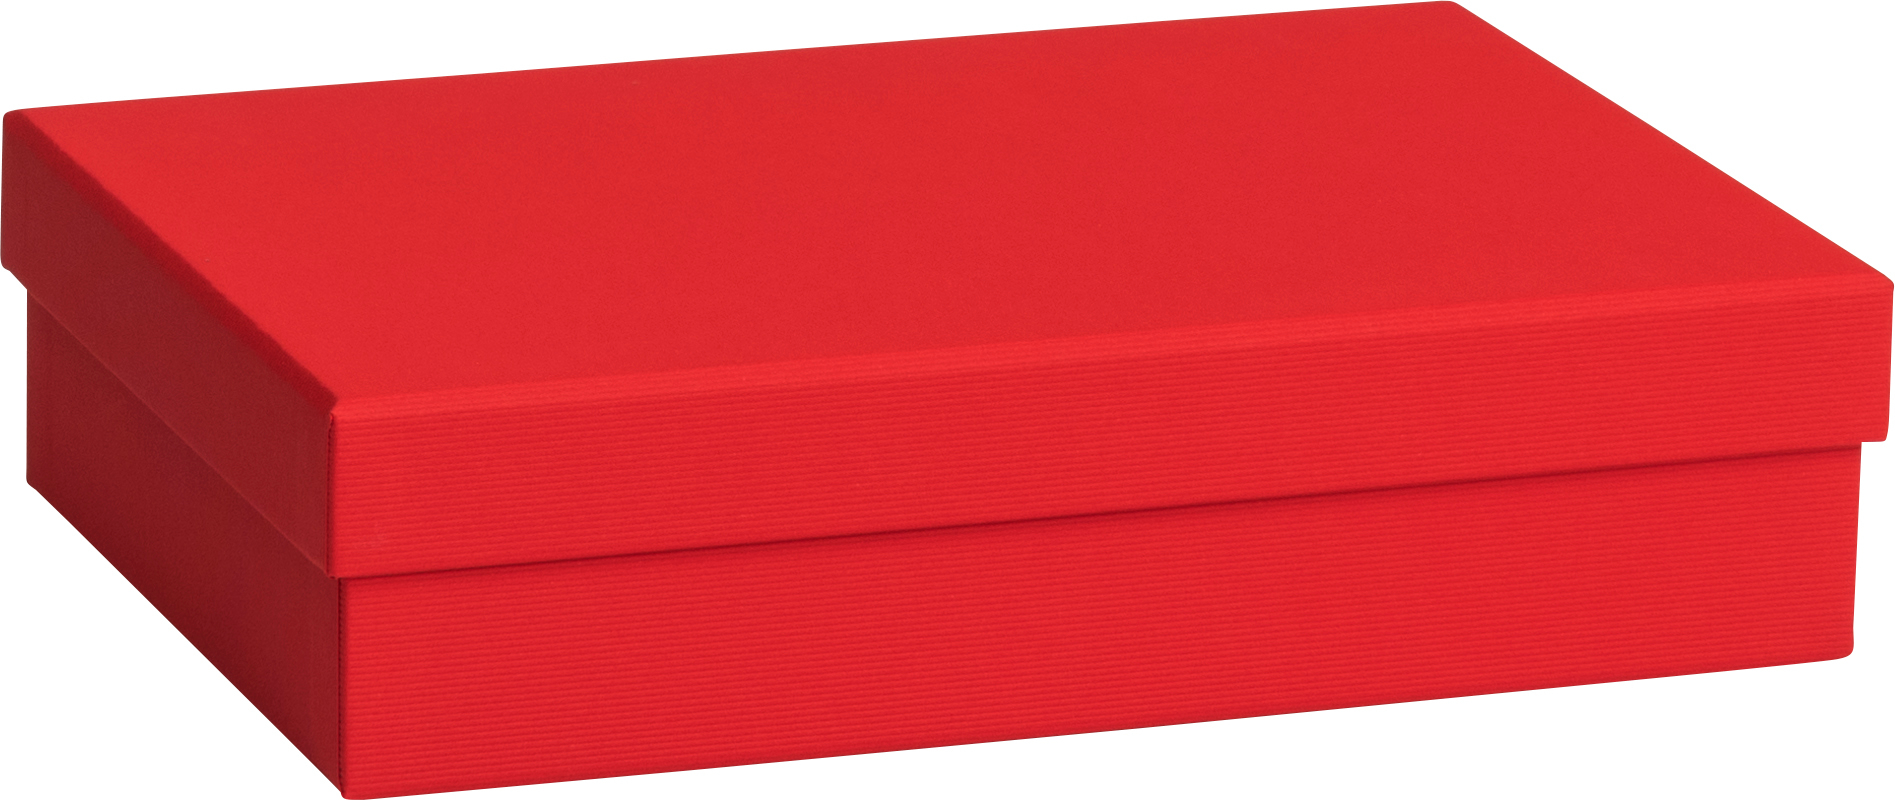 STEWO Boîte cadeau One Colour 2551784392 rouge 16.5x24x6cm